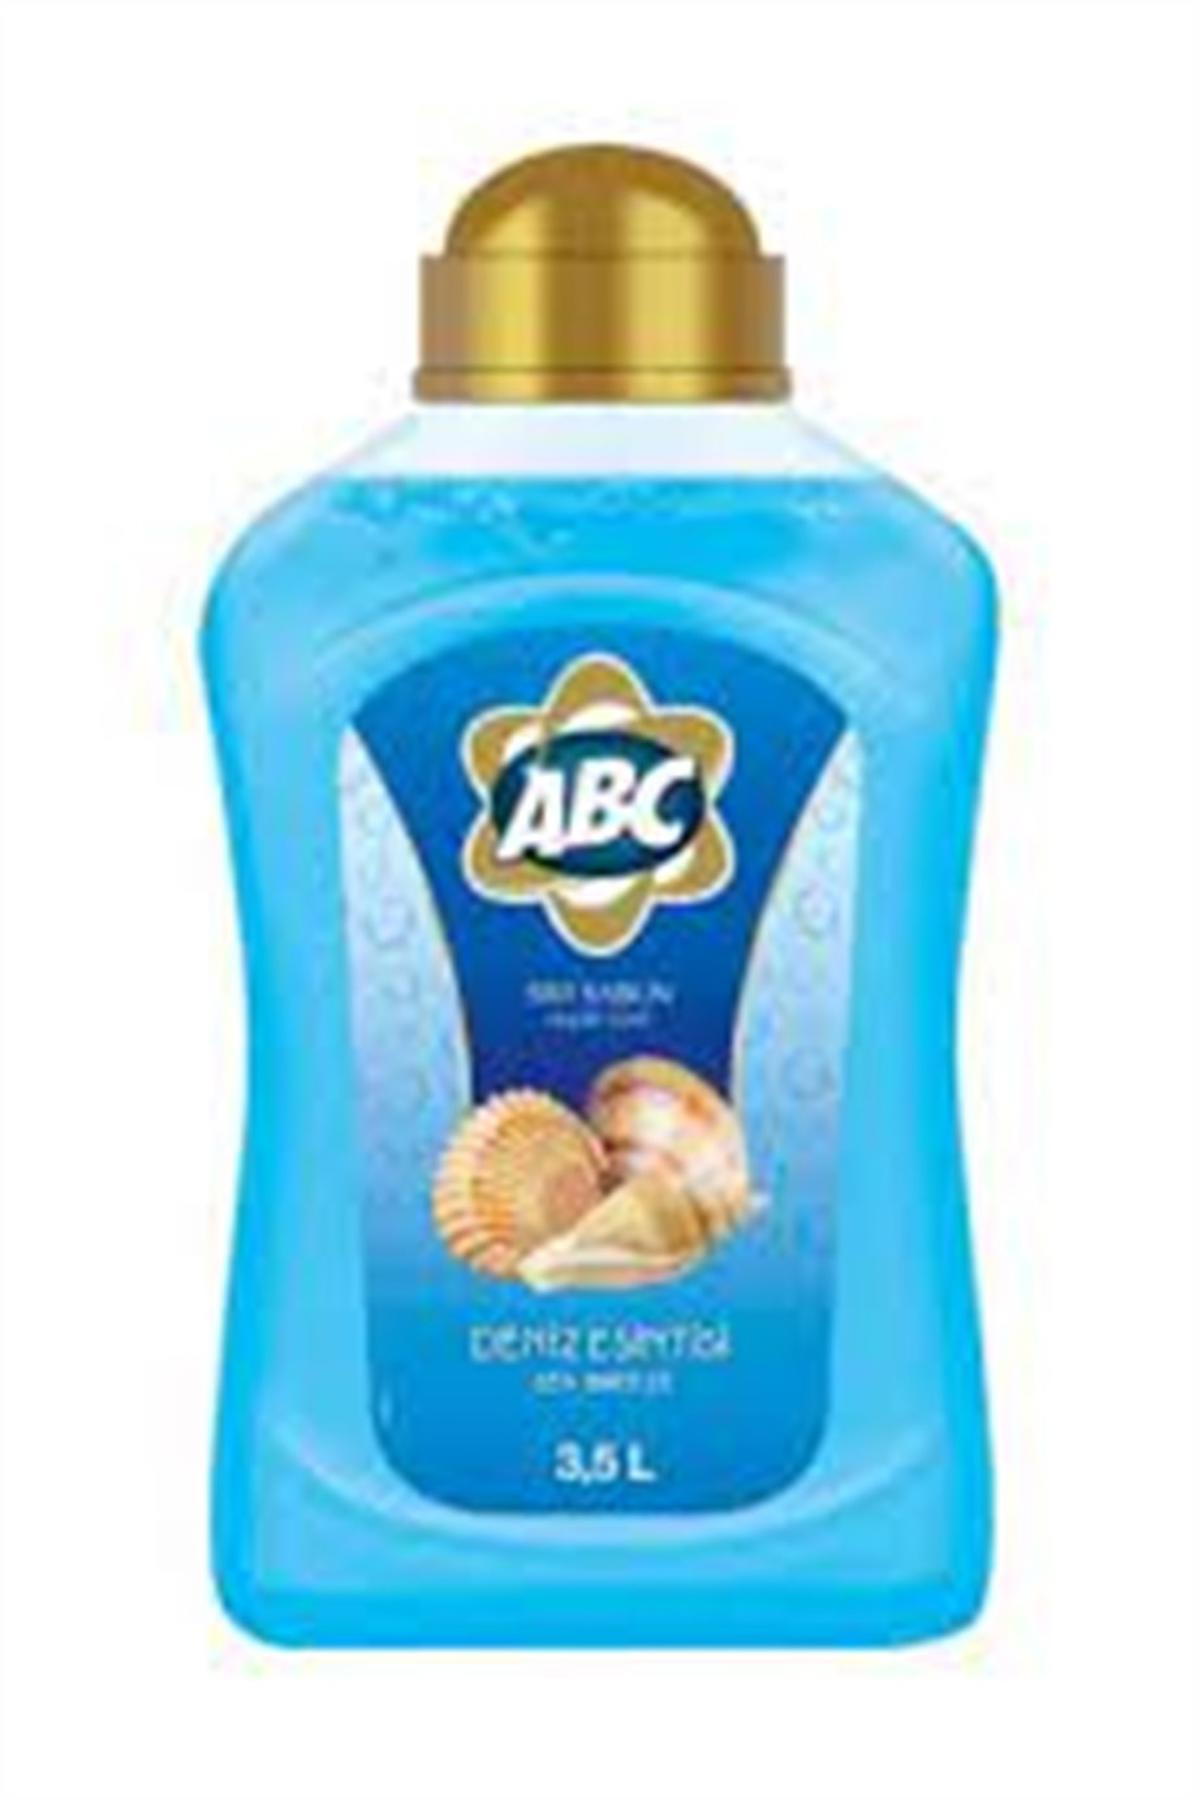 ABC Deniz Esintisi Sıvı Sabun 3.5 lt Tekli